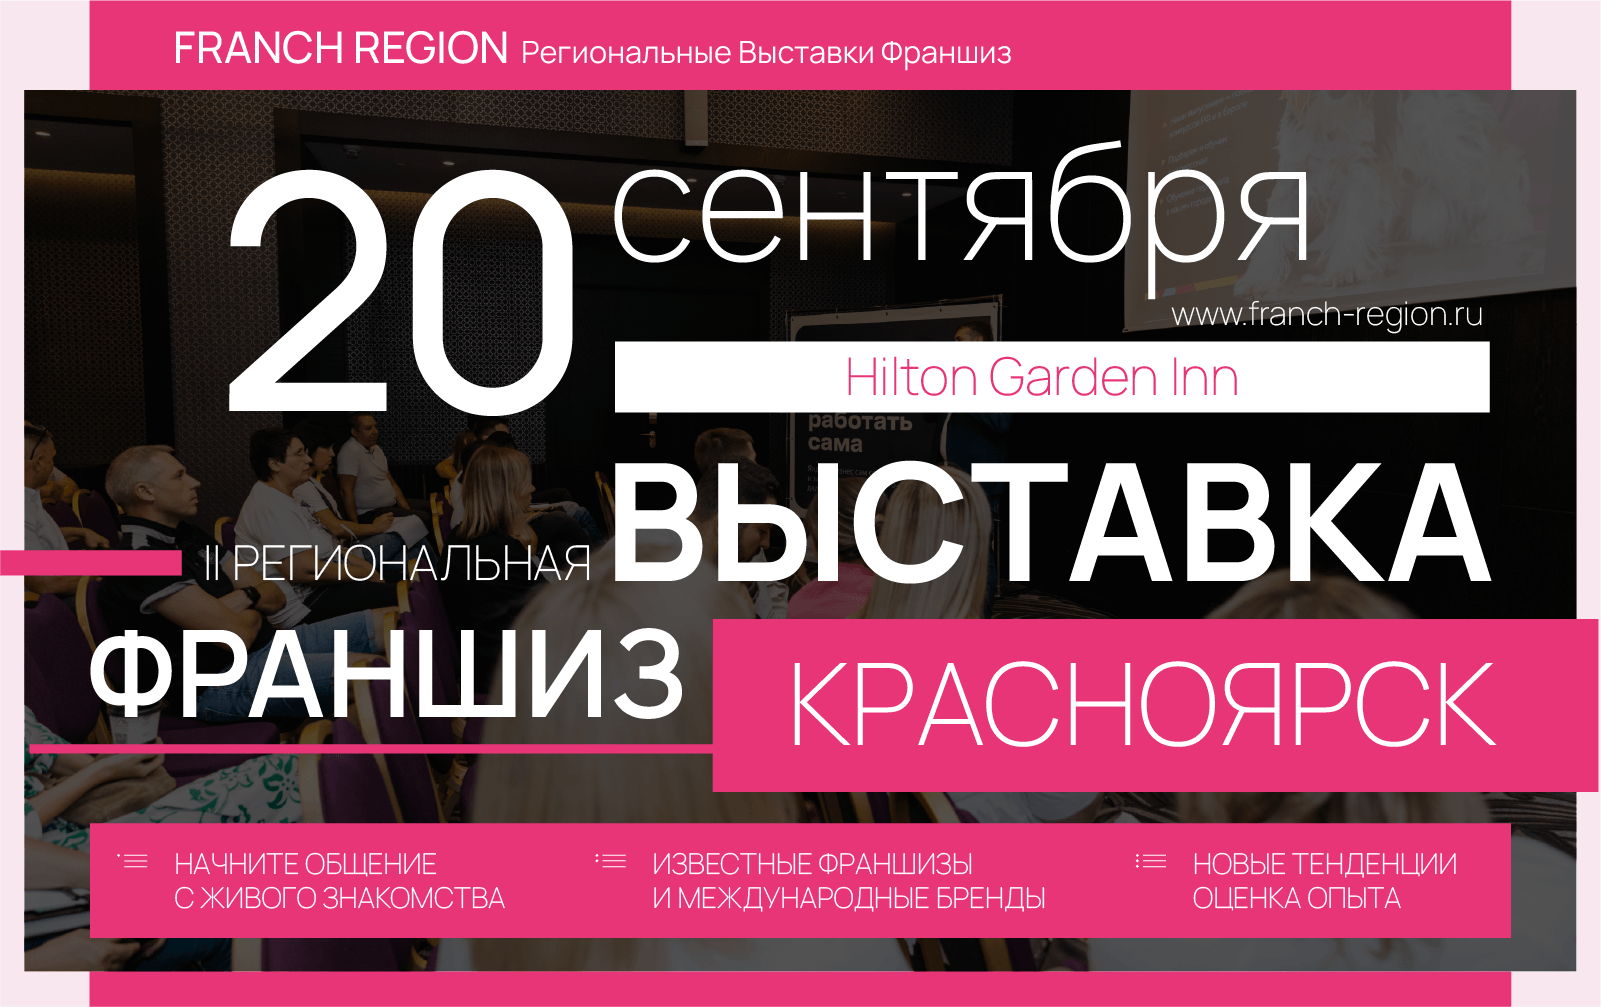 20 сентября в Красноярске состоится региональная выставка франшиз Franch Region